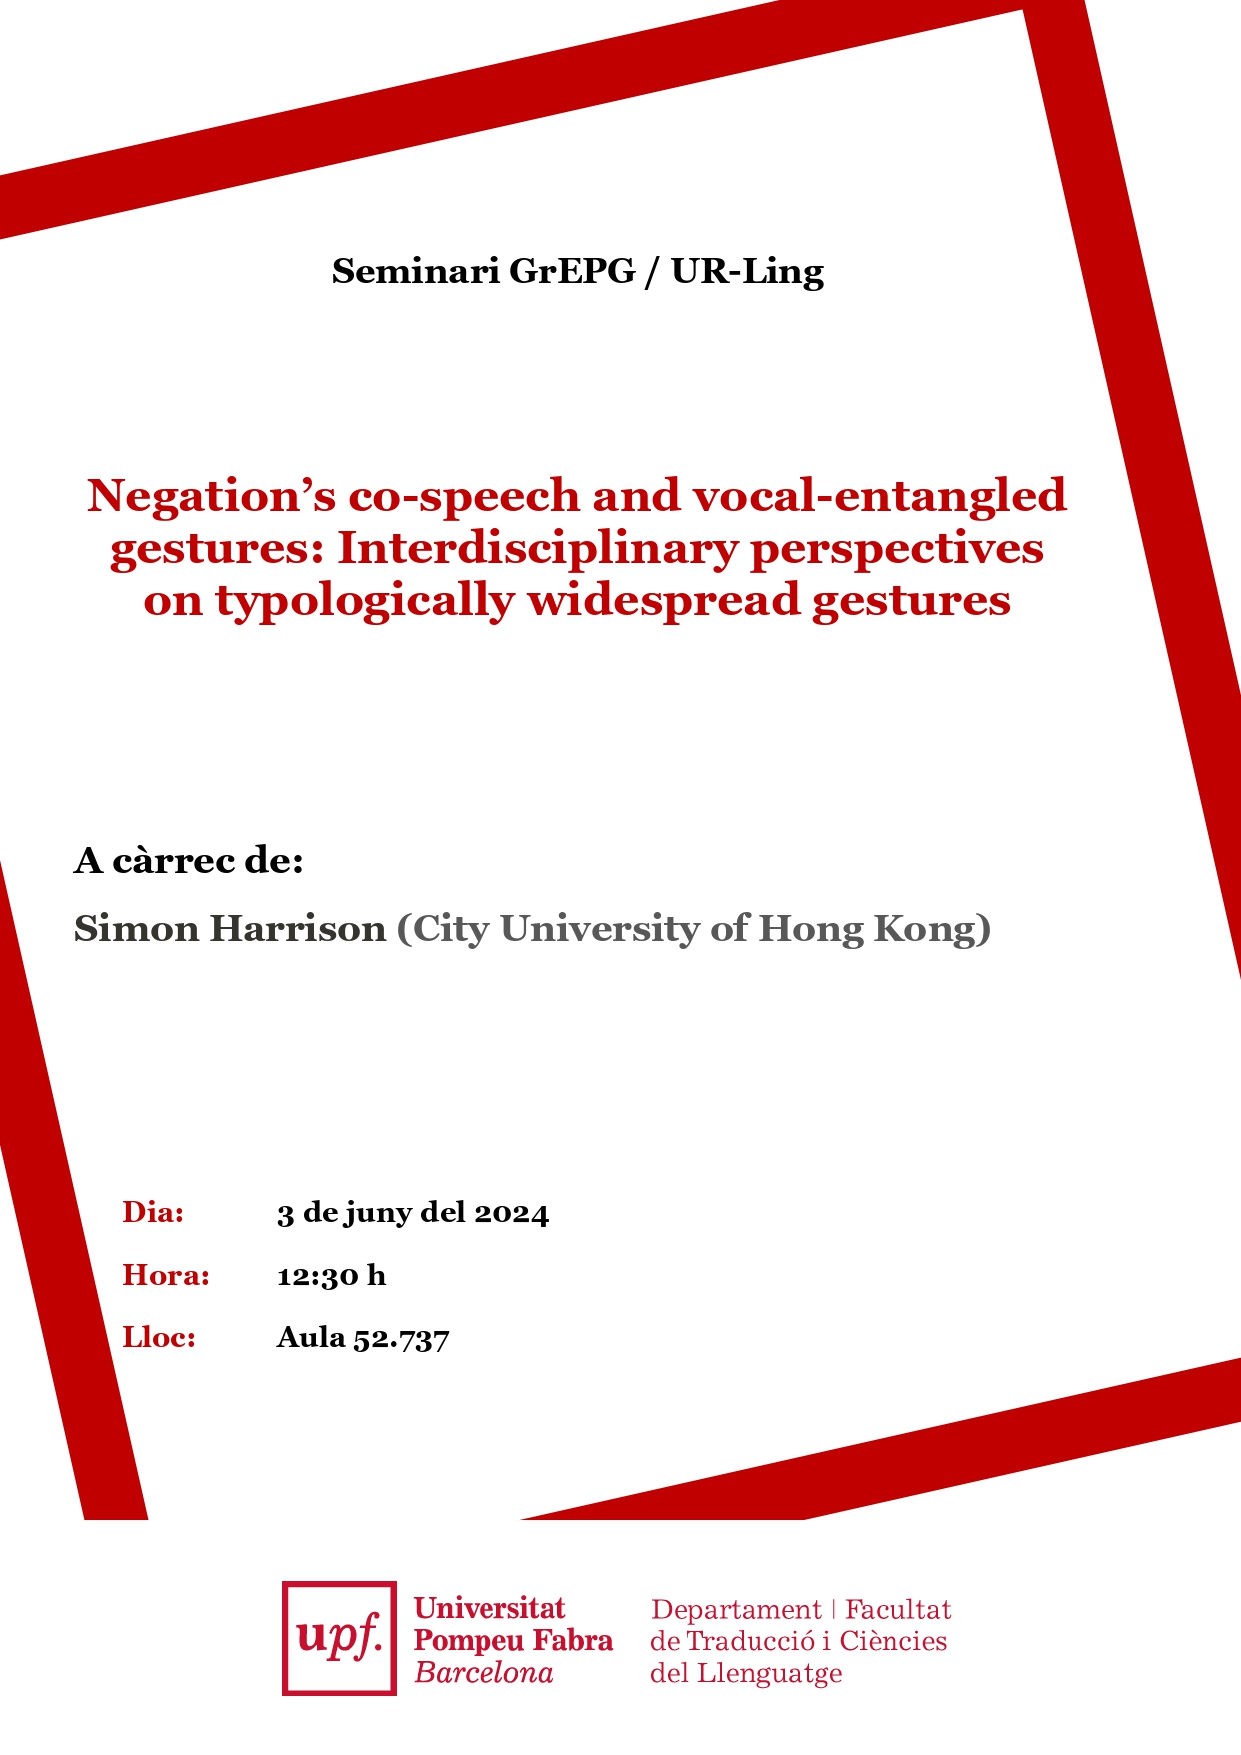 03/06/2024 Seminari organitzat pel GrEPG (Grup d'Estudis de Prosòdia i Gestualitat) UR-Ling, a càrrec de  Simon Harrison (City University of Hong Kong)